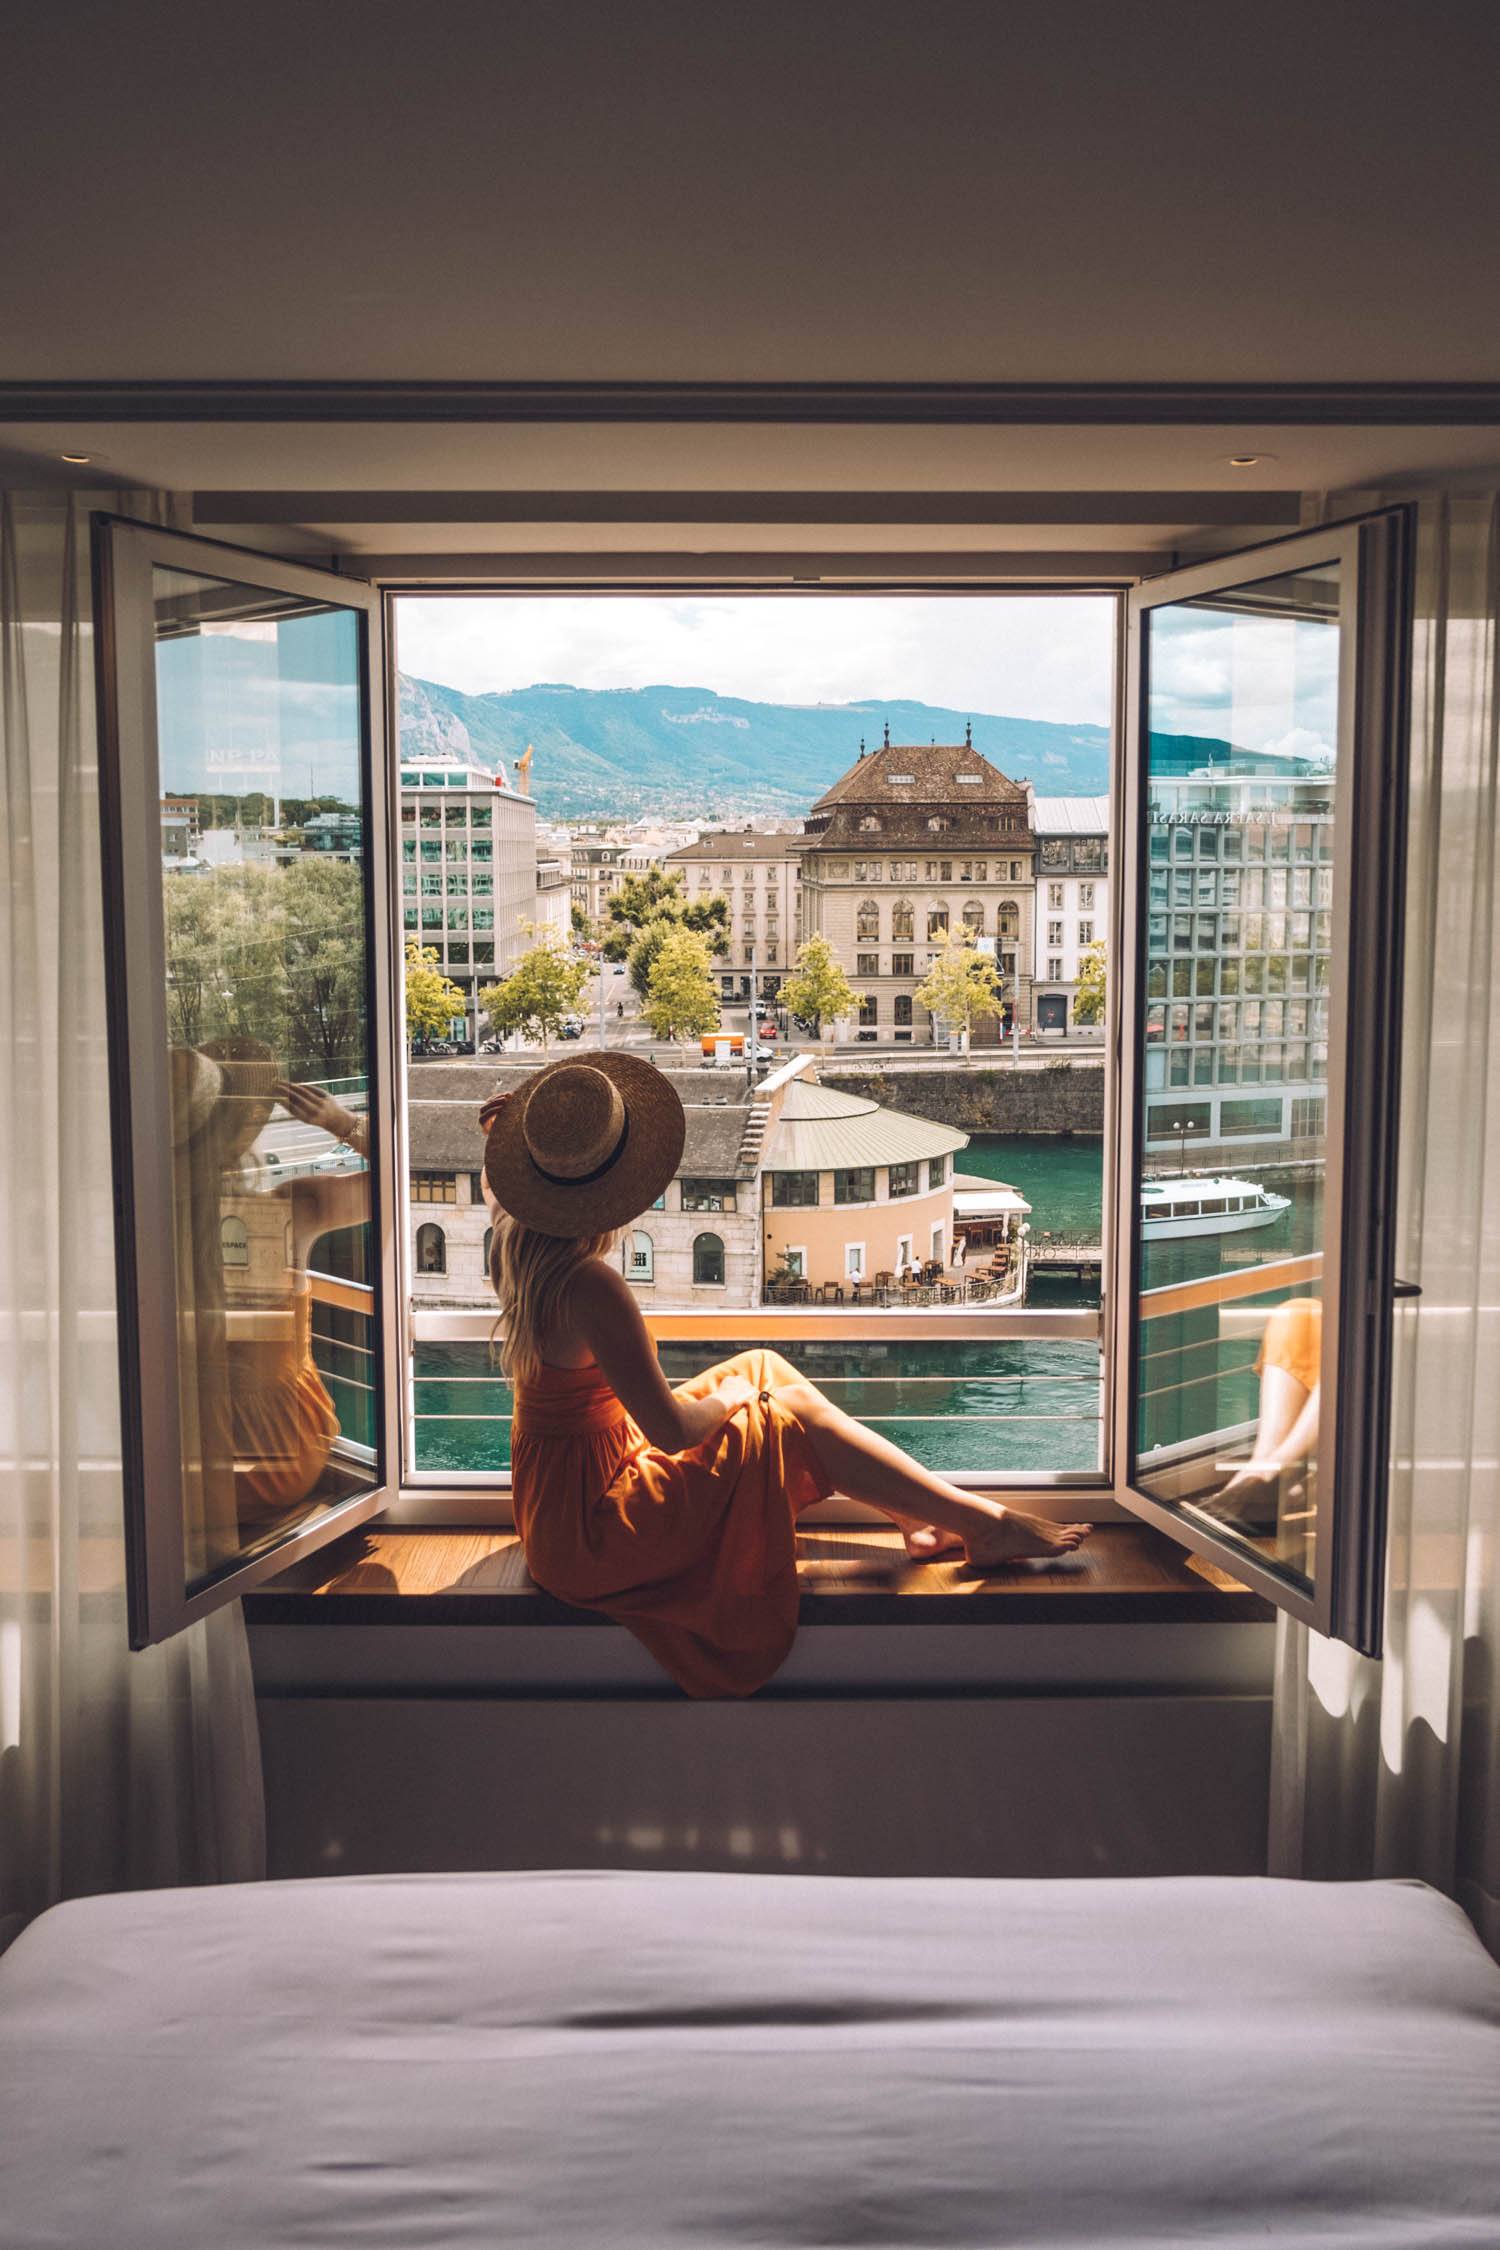 Solo Female Travel - The Blonde Abroad, Lake Geneva Switzerland